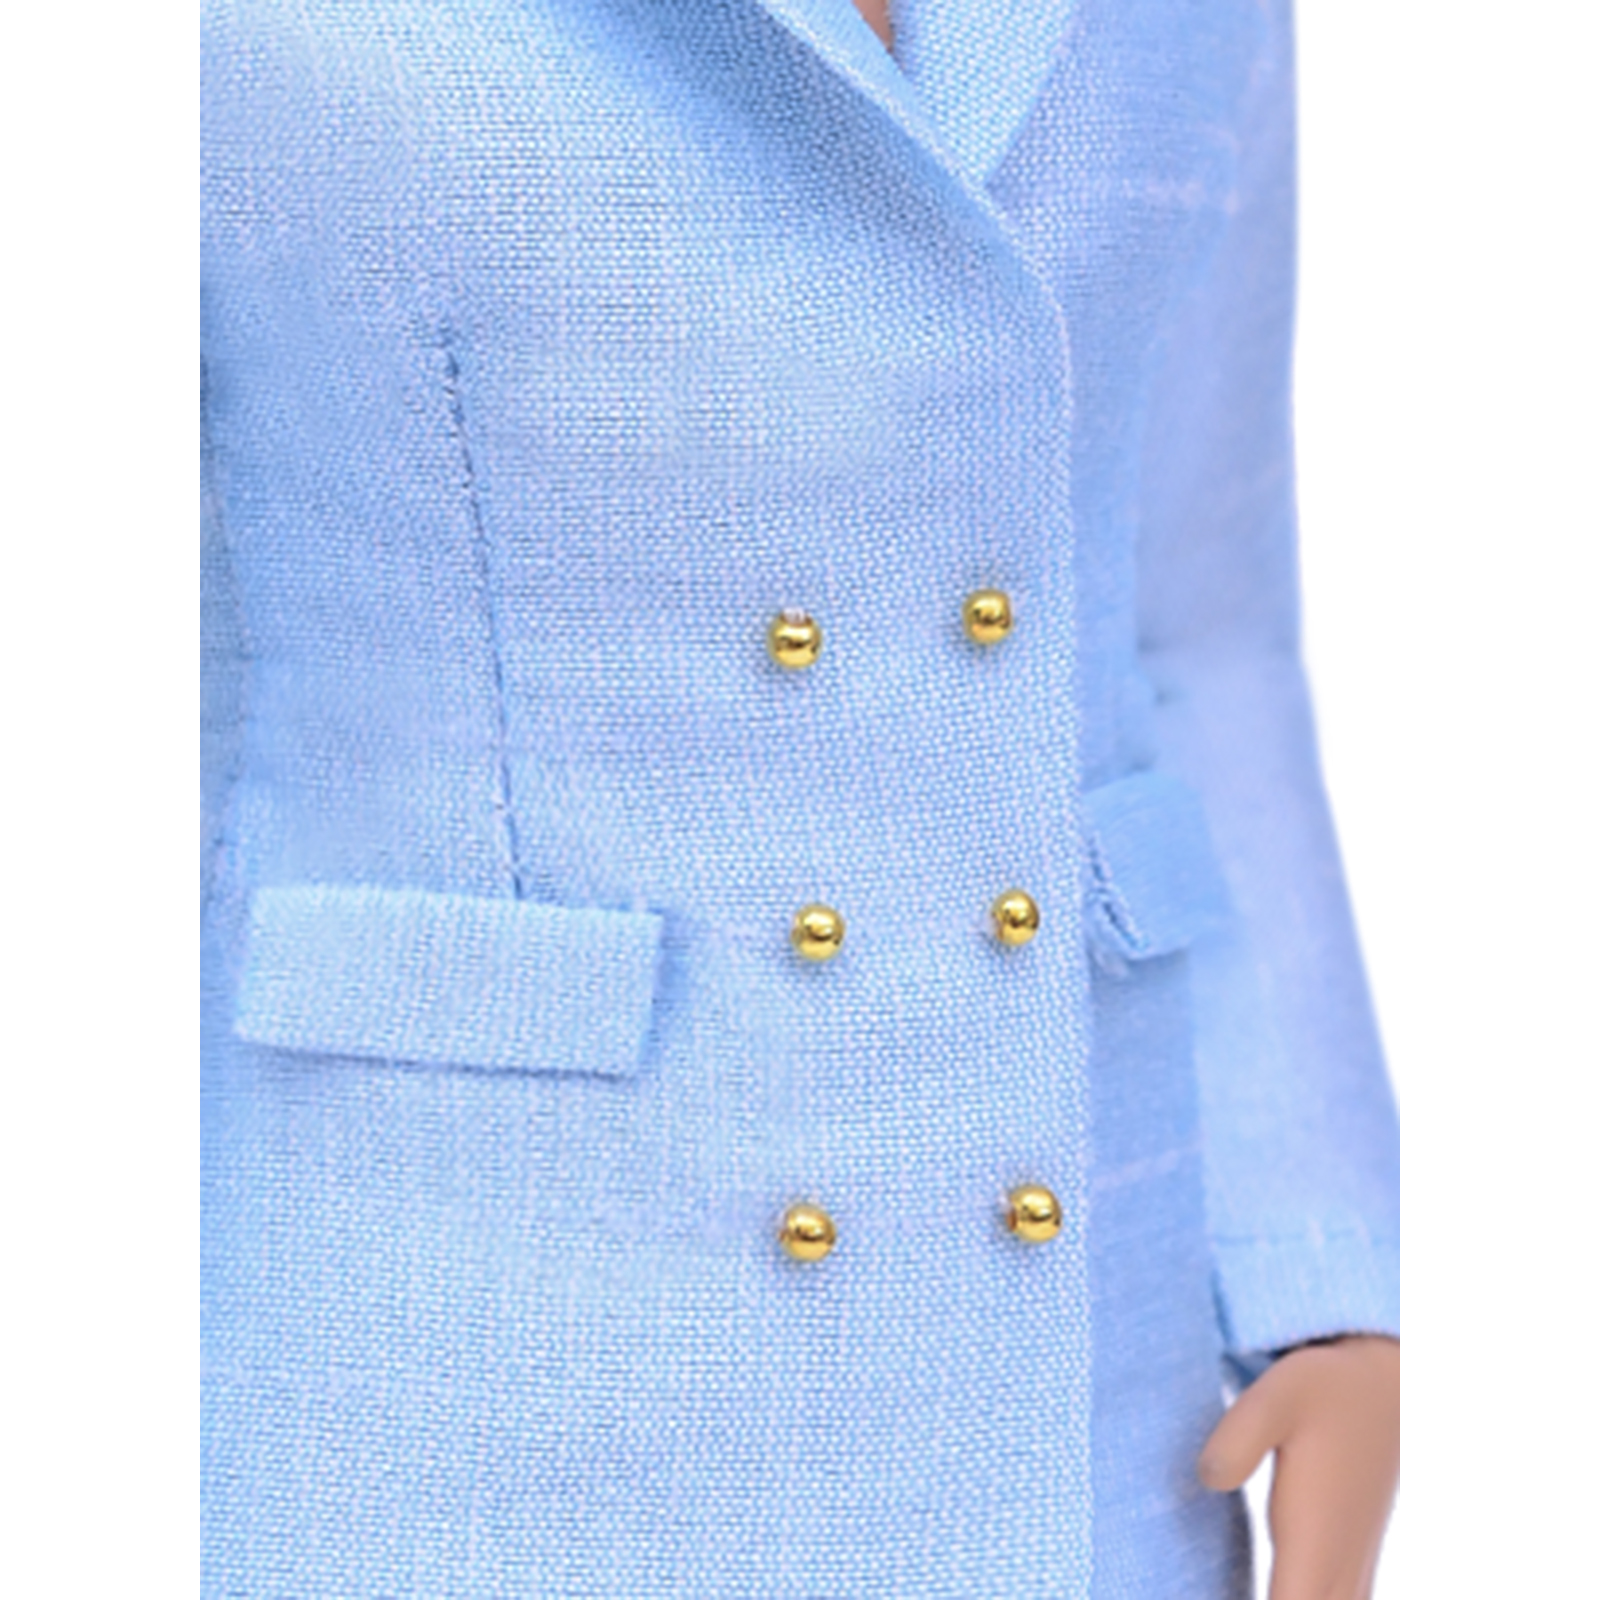 Шелковый брючный костюм Эленприв Светло-голубой для куклы 29 см типа Барби FA-011-09 - фото 7